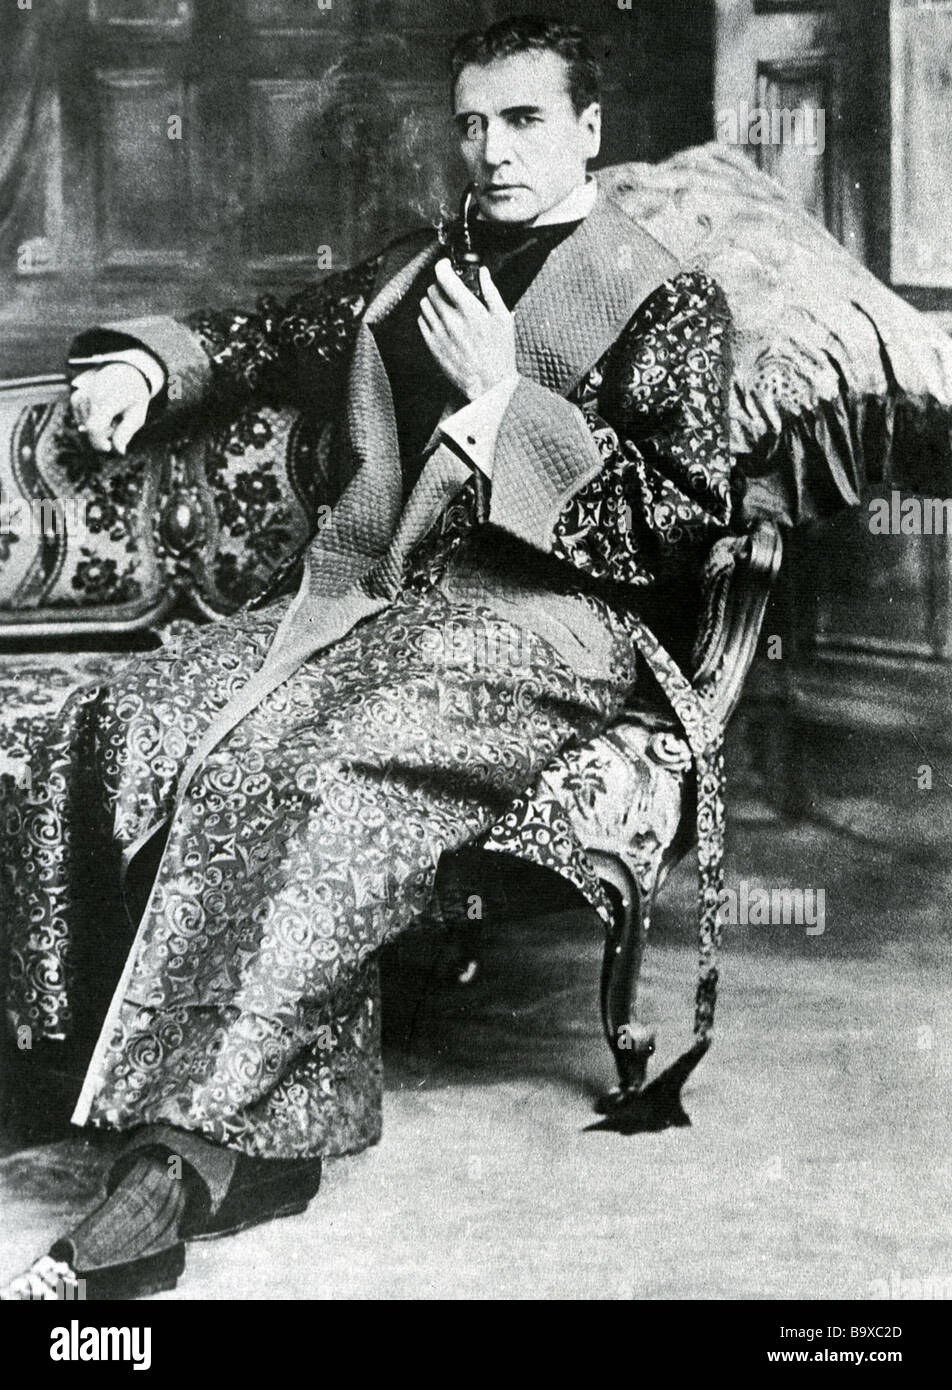 SHERLOCK HOLMES interprété par William Gillette au duc de York Theatre de Londres en 1905, la deuxième fois qu'il avait joué Holmes Banque D'Images